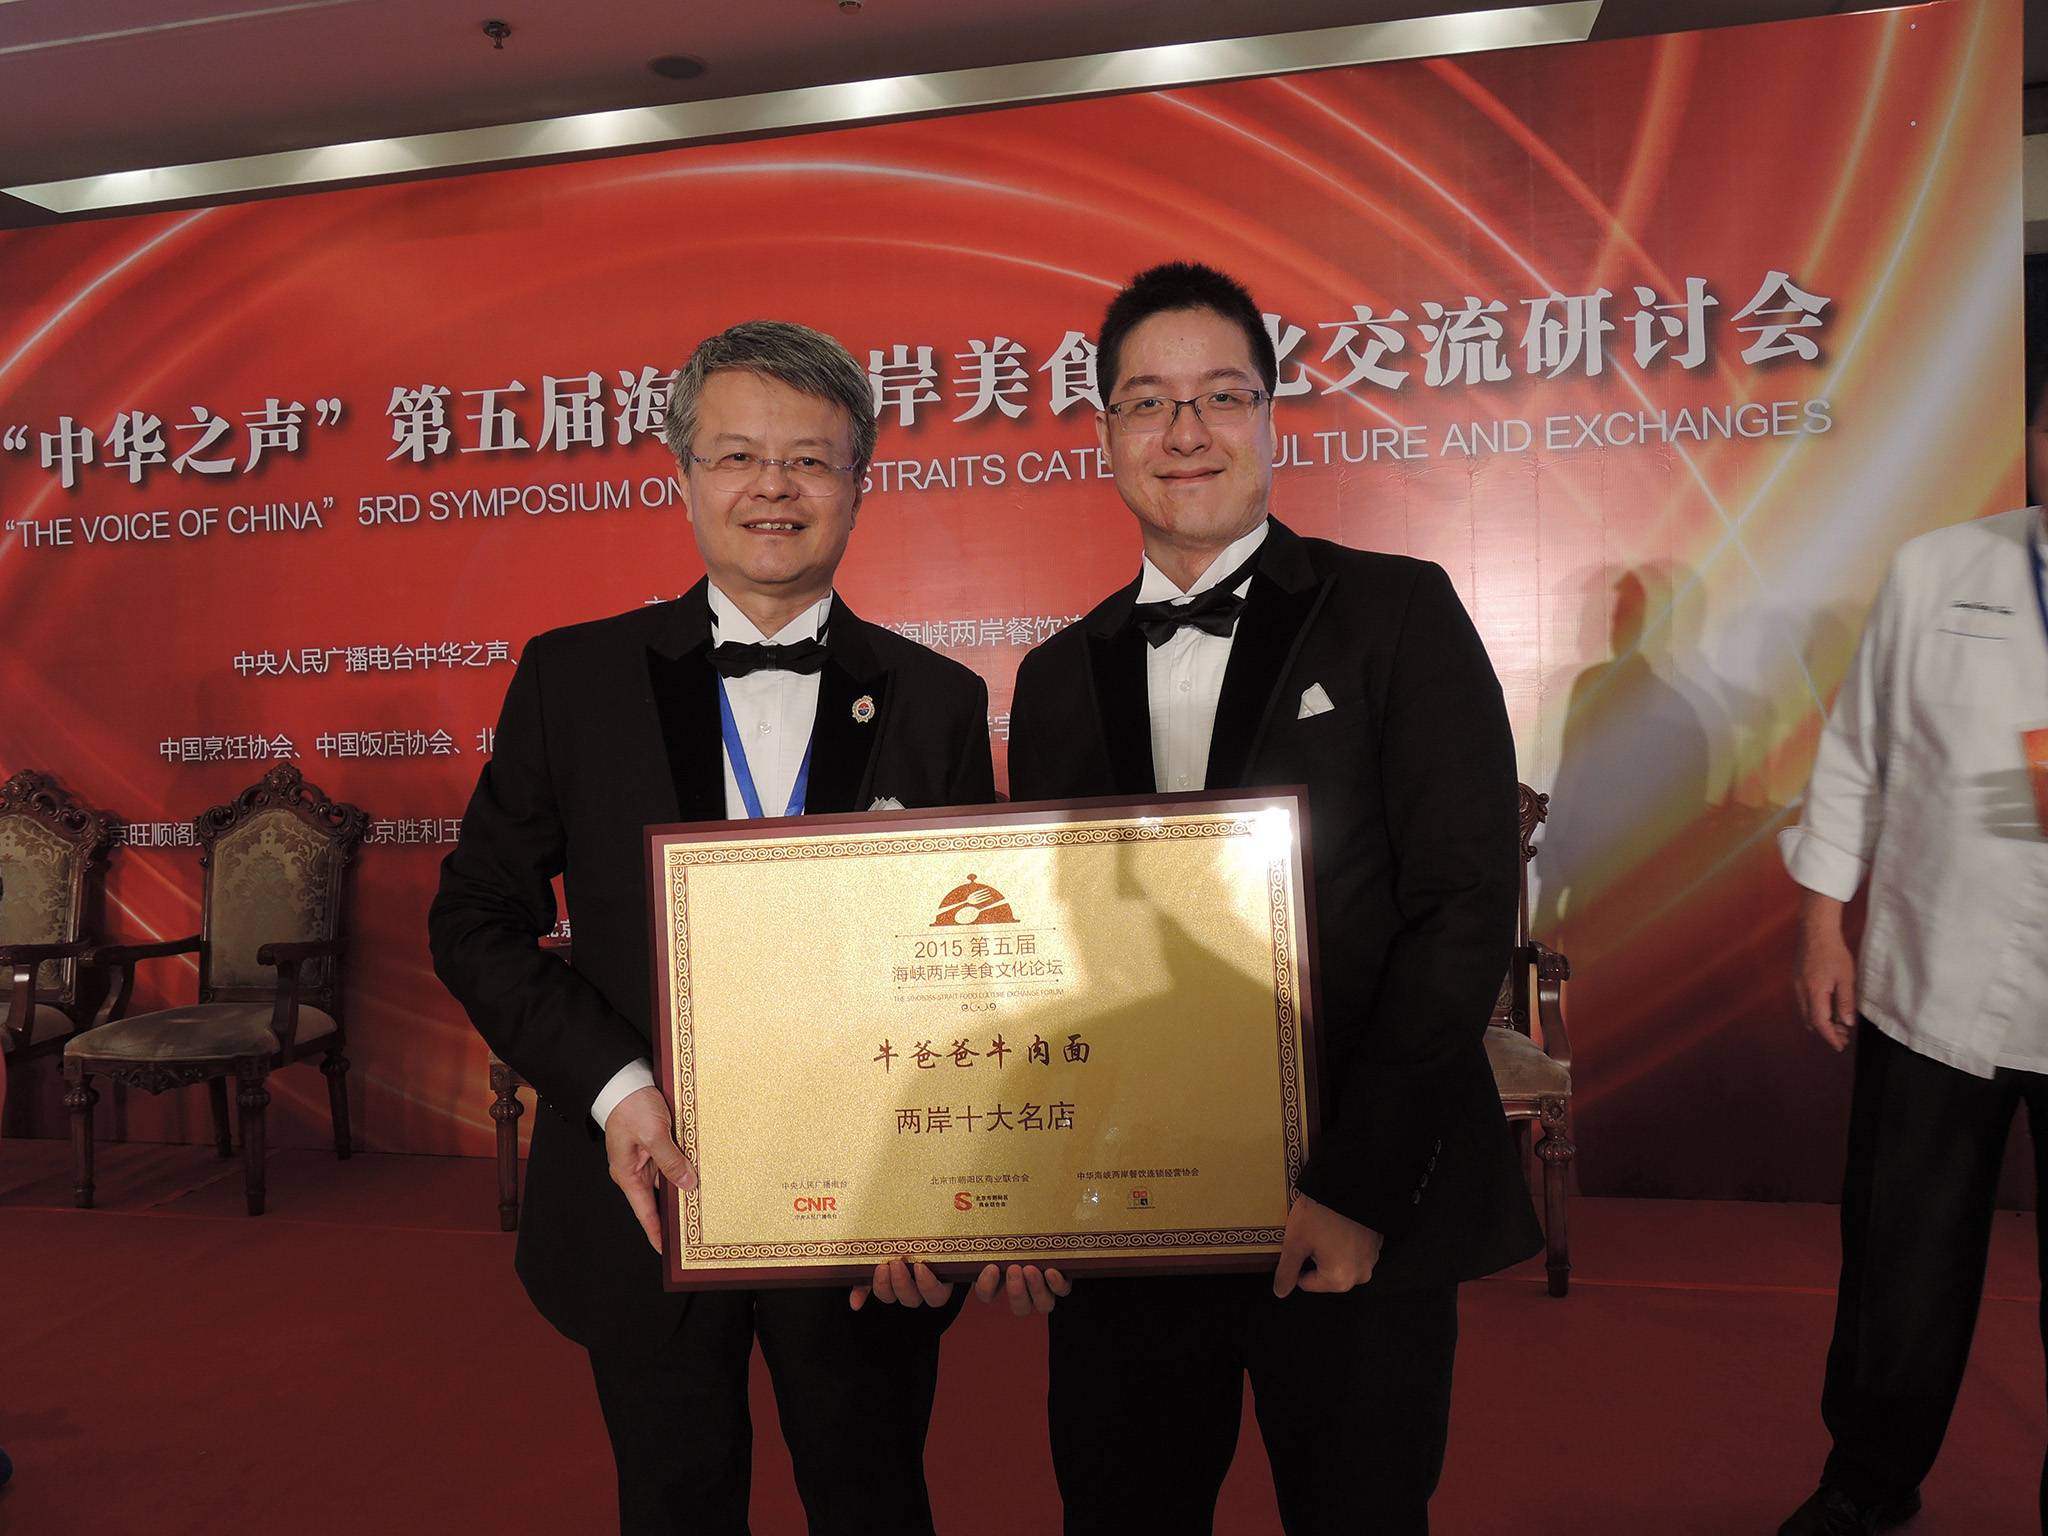 台北 牛肉麵 牛爸爸及兒子領獎的合照，店家榮獲2015第五屆海峽兩岸美食文化論壇的兩岸十大名店。